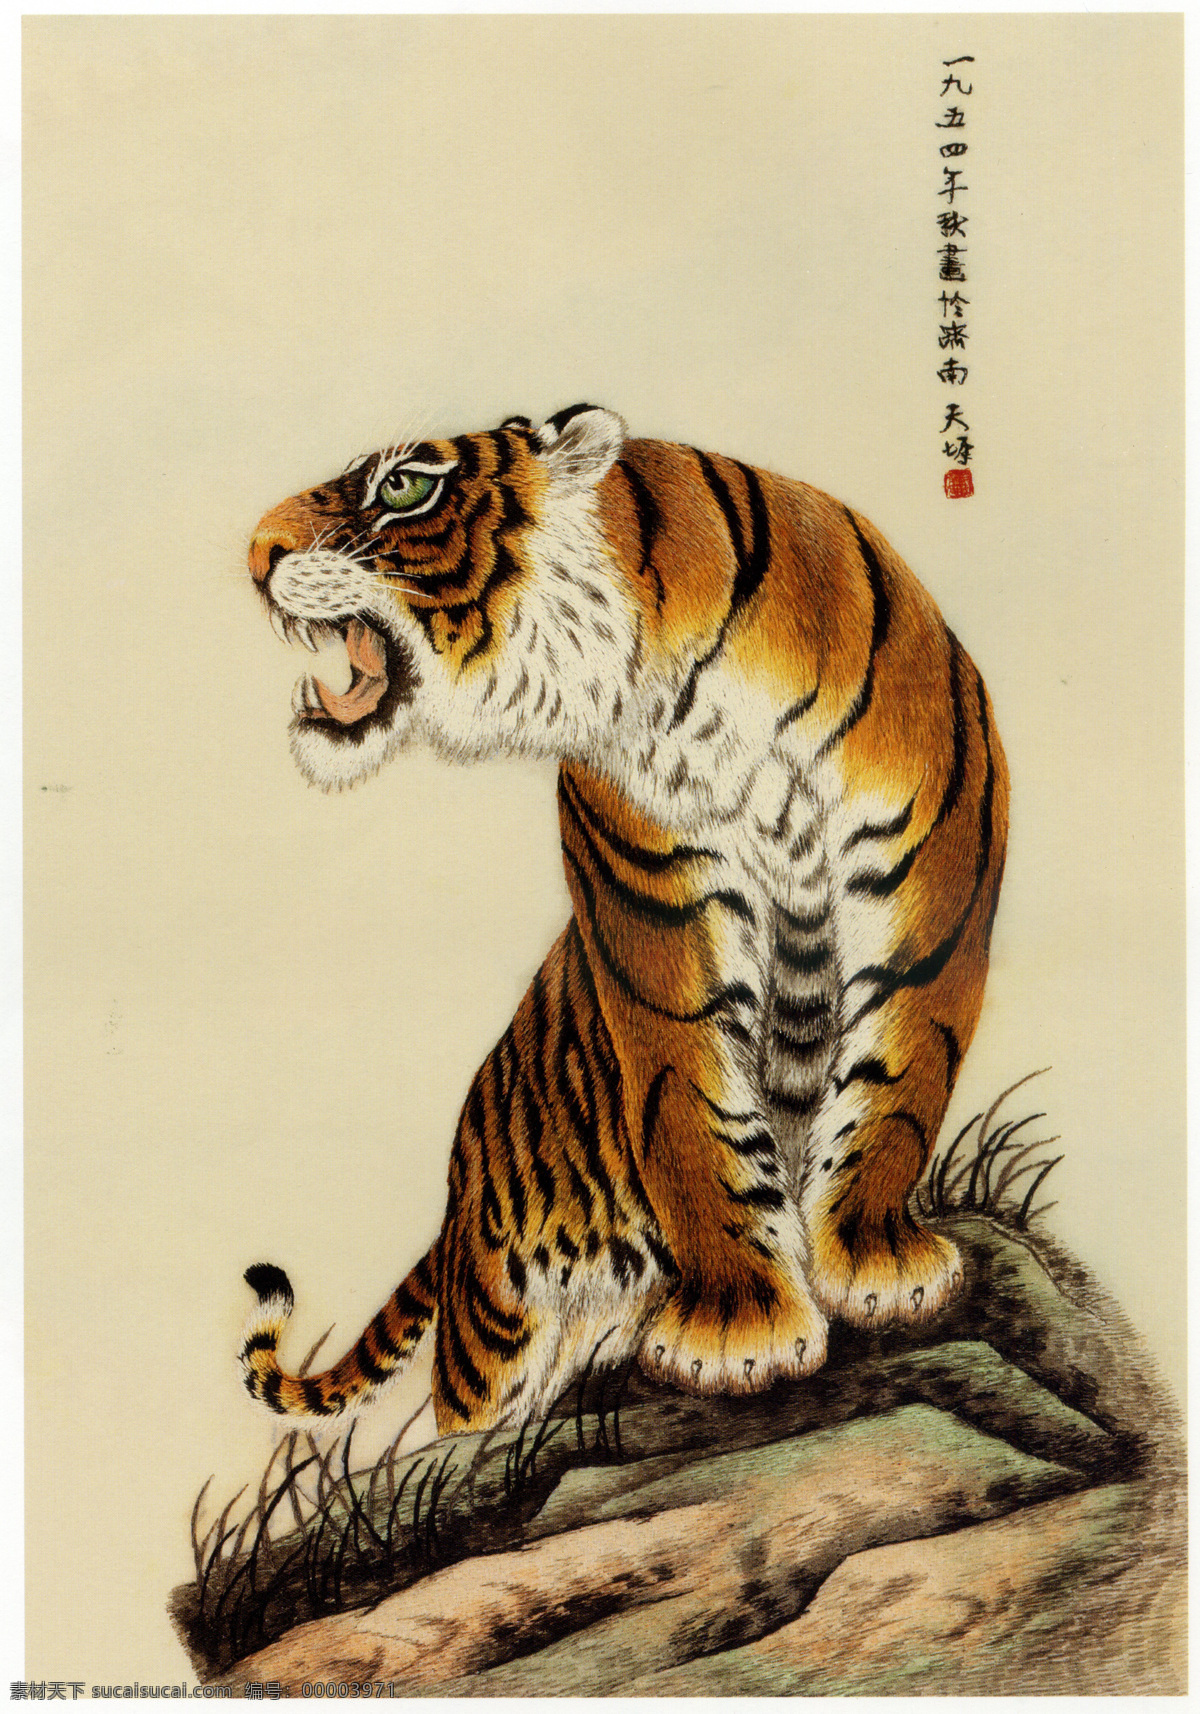 刺绣 动物 工笔 国画 绘画书法 老虎 数码 老虎设计素材 老虎模板下载 文化艺术